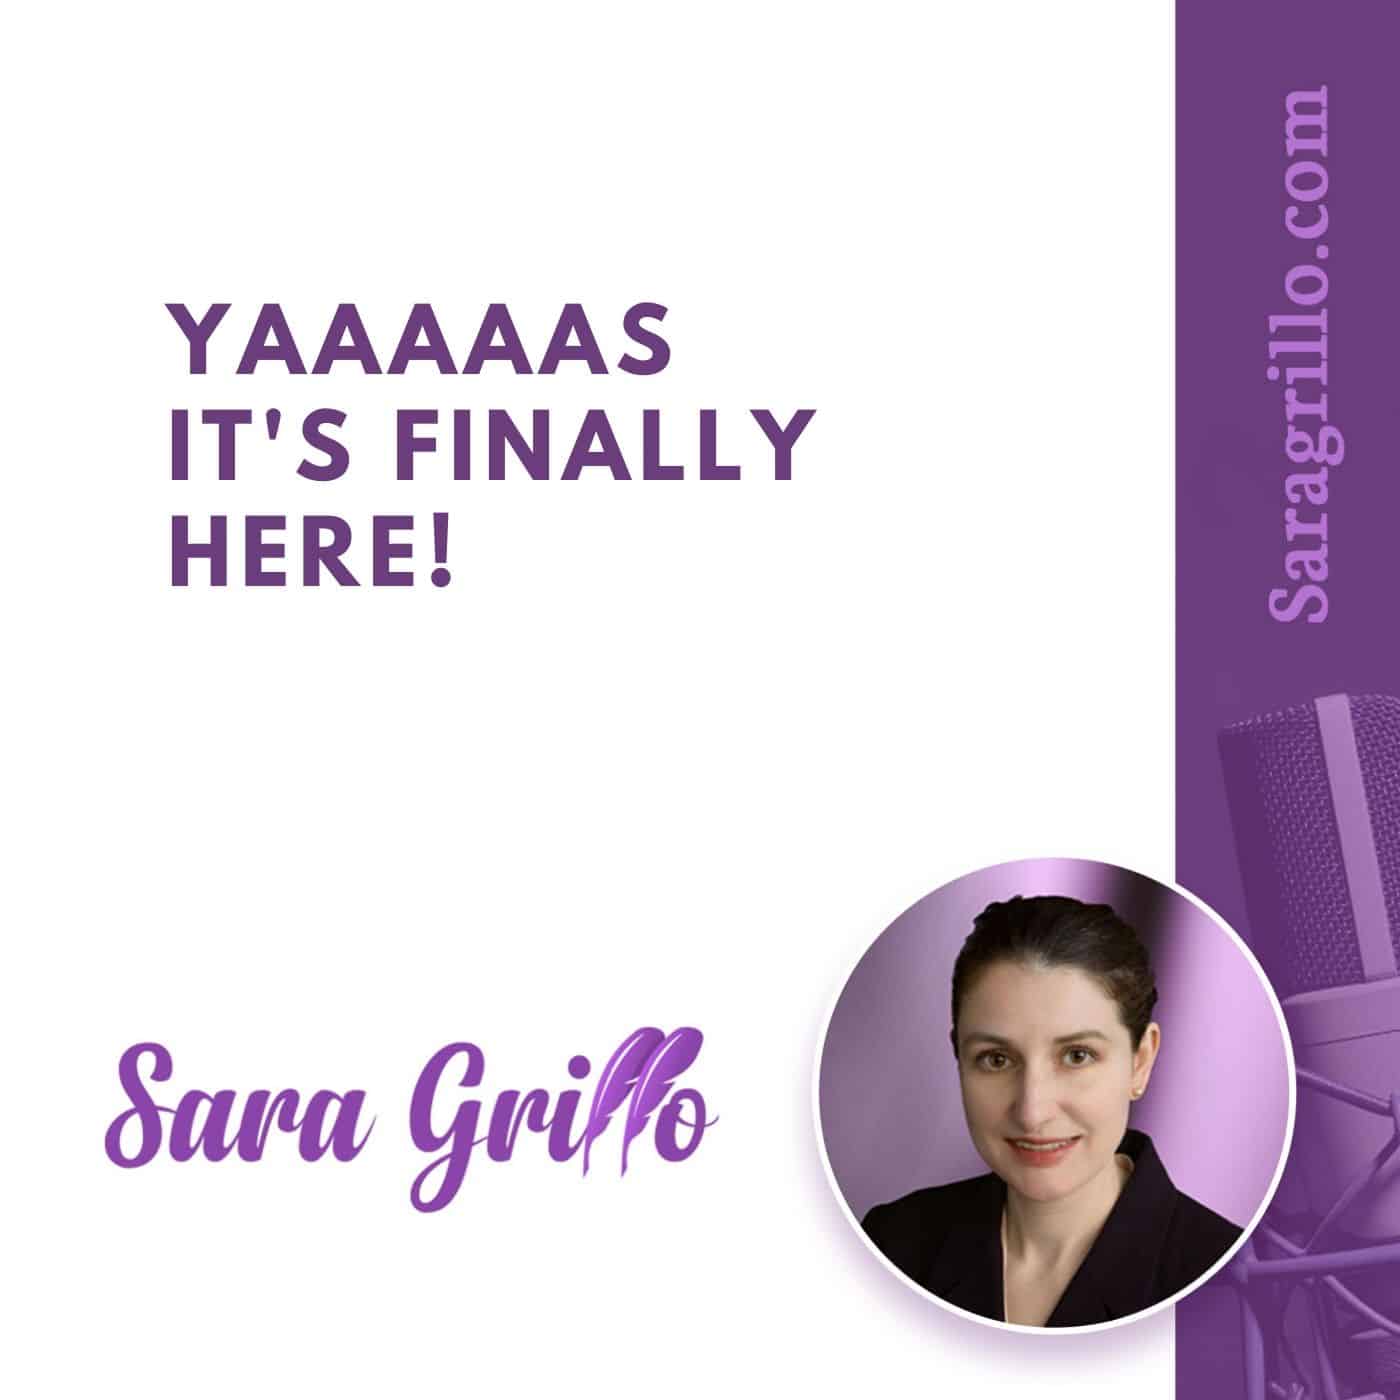 Sara Grillo podcast announcement